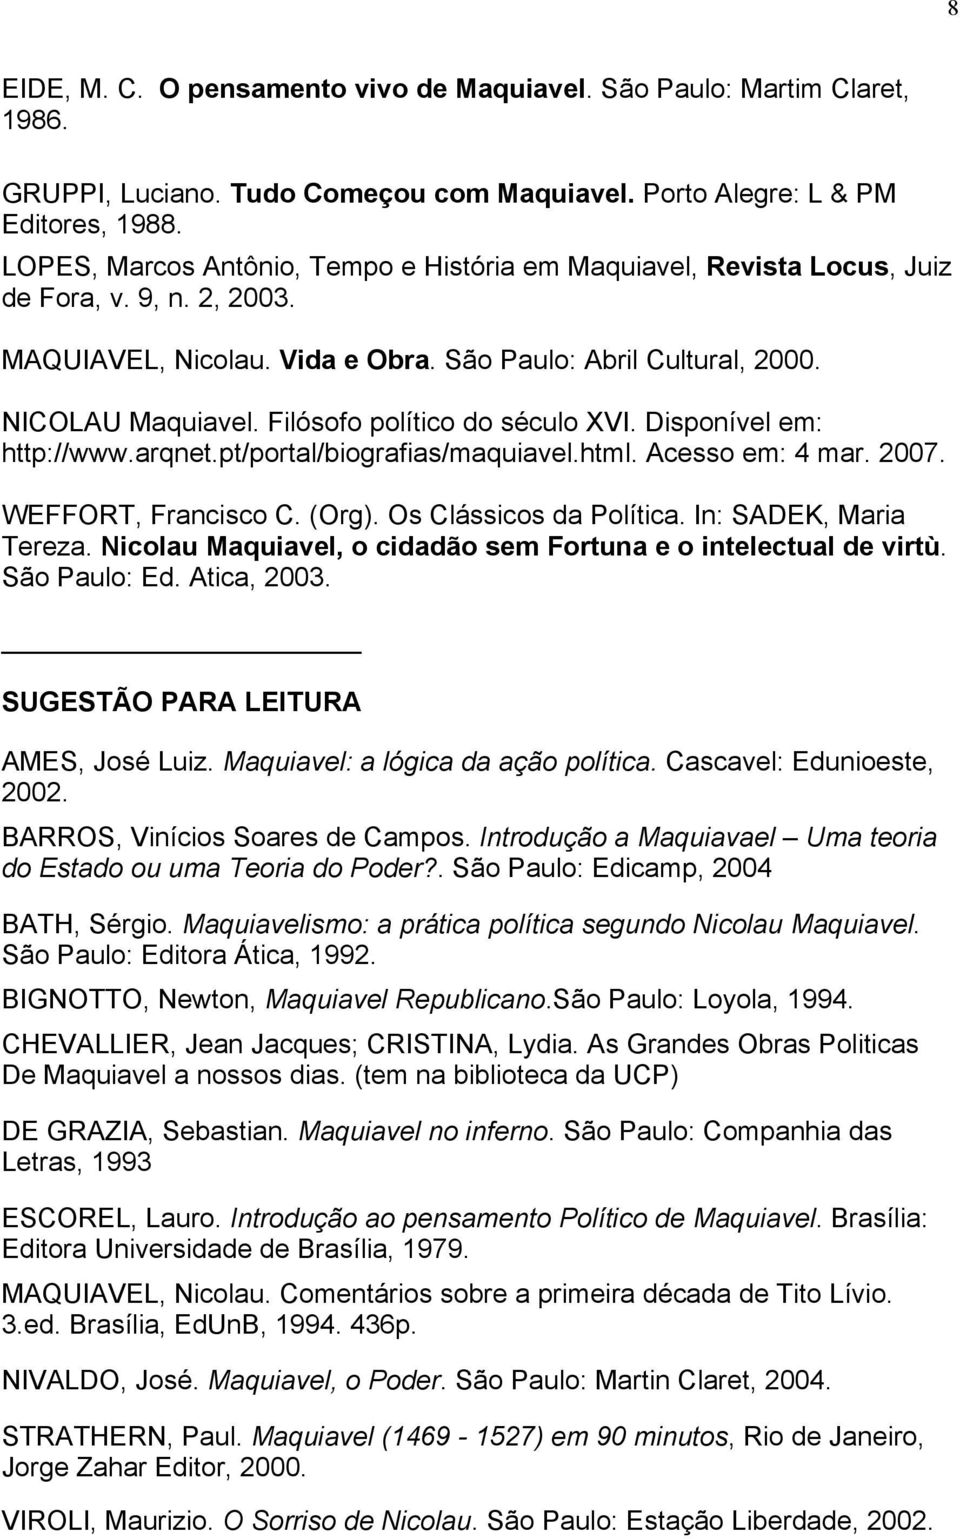 Filósofo político do século XVI. Disponível em: http://www.arqnet.pt/portal/biografias/maquiavel.html. Acesso em: 4 mar. 2007. WEFFORT, Francisco C. (Org). Os Clássicos da Política.